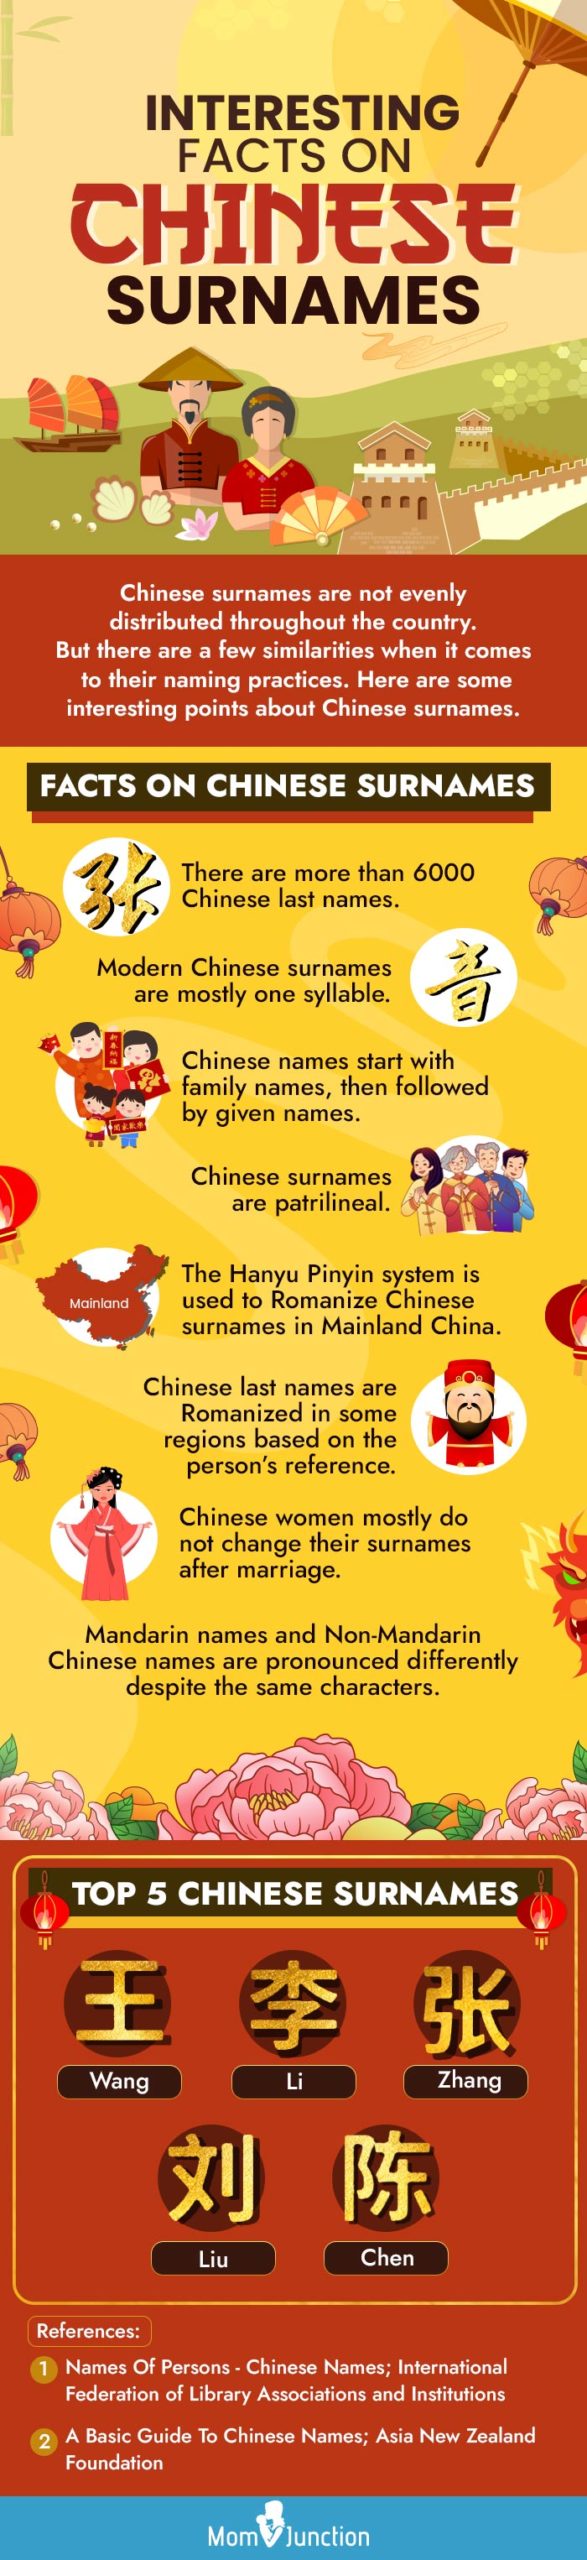 关于中国人姓氏的趣事(信息图)